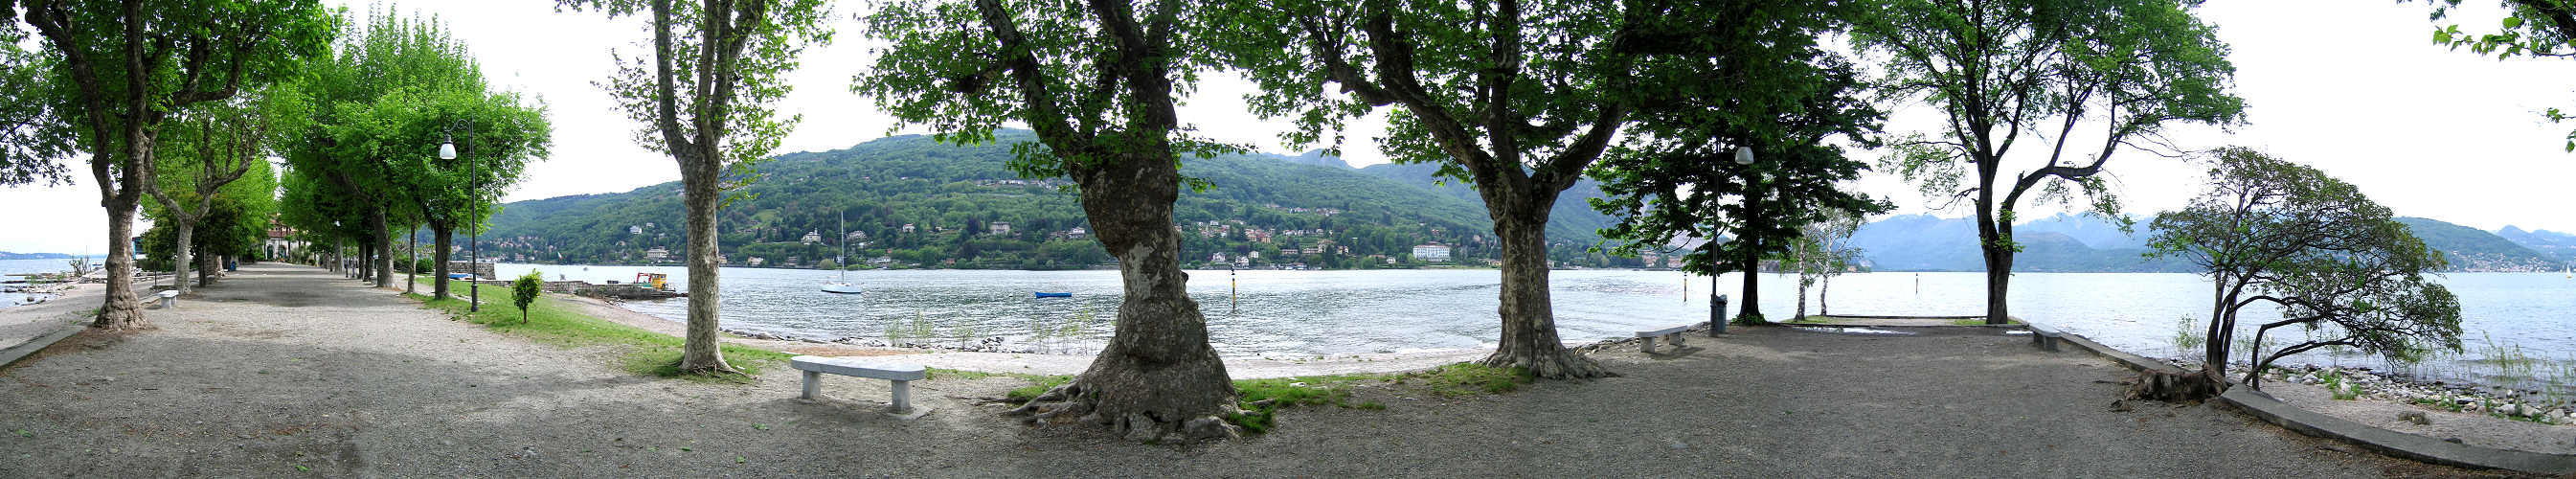 Lago Maggiore - Stresa - Isola dei Pescatori